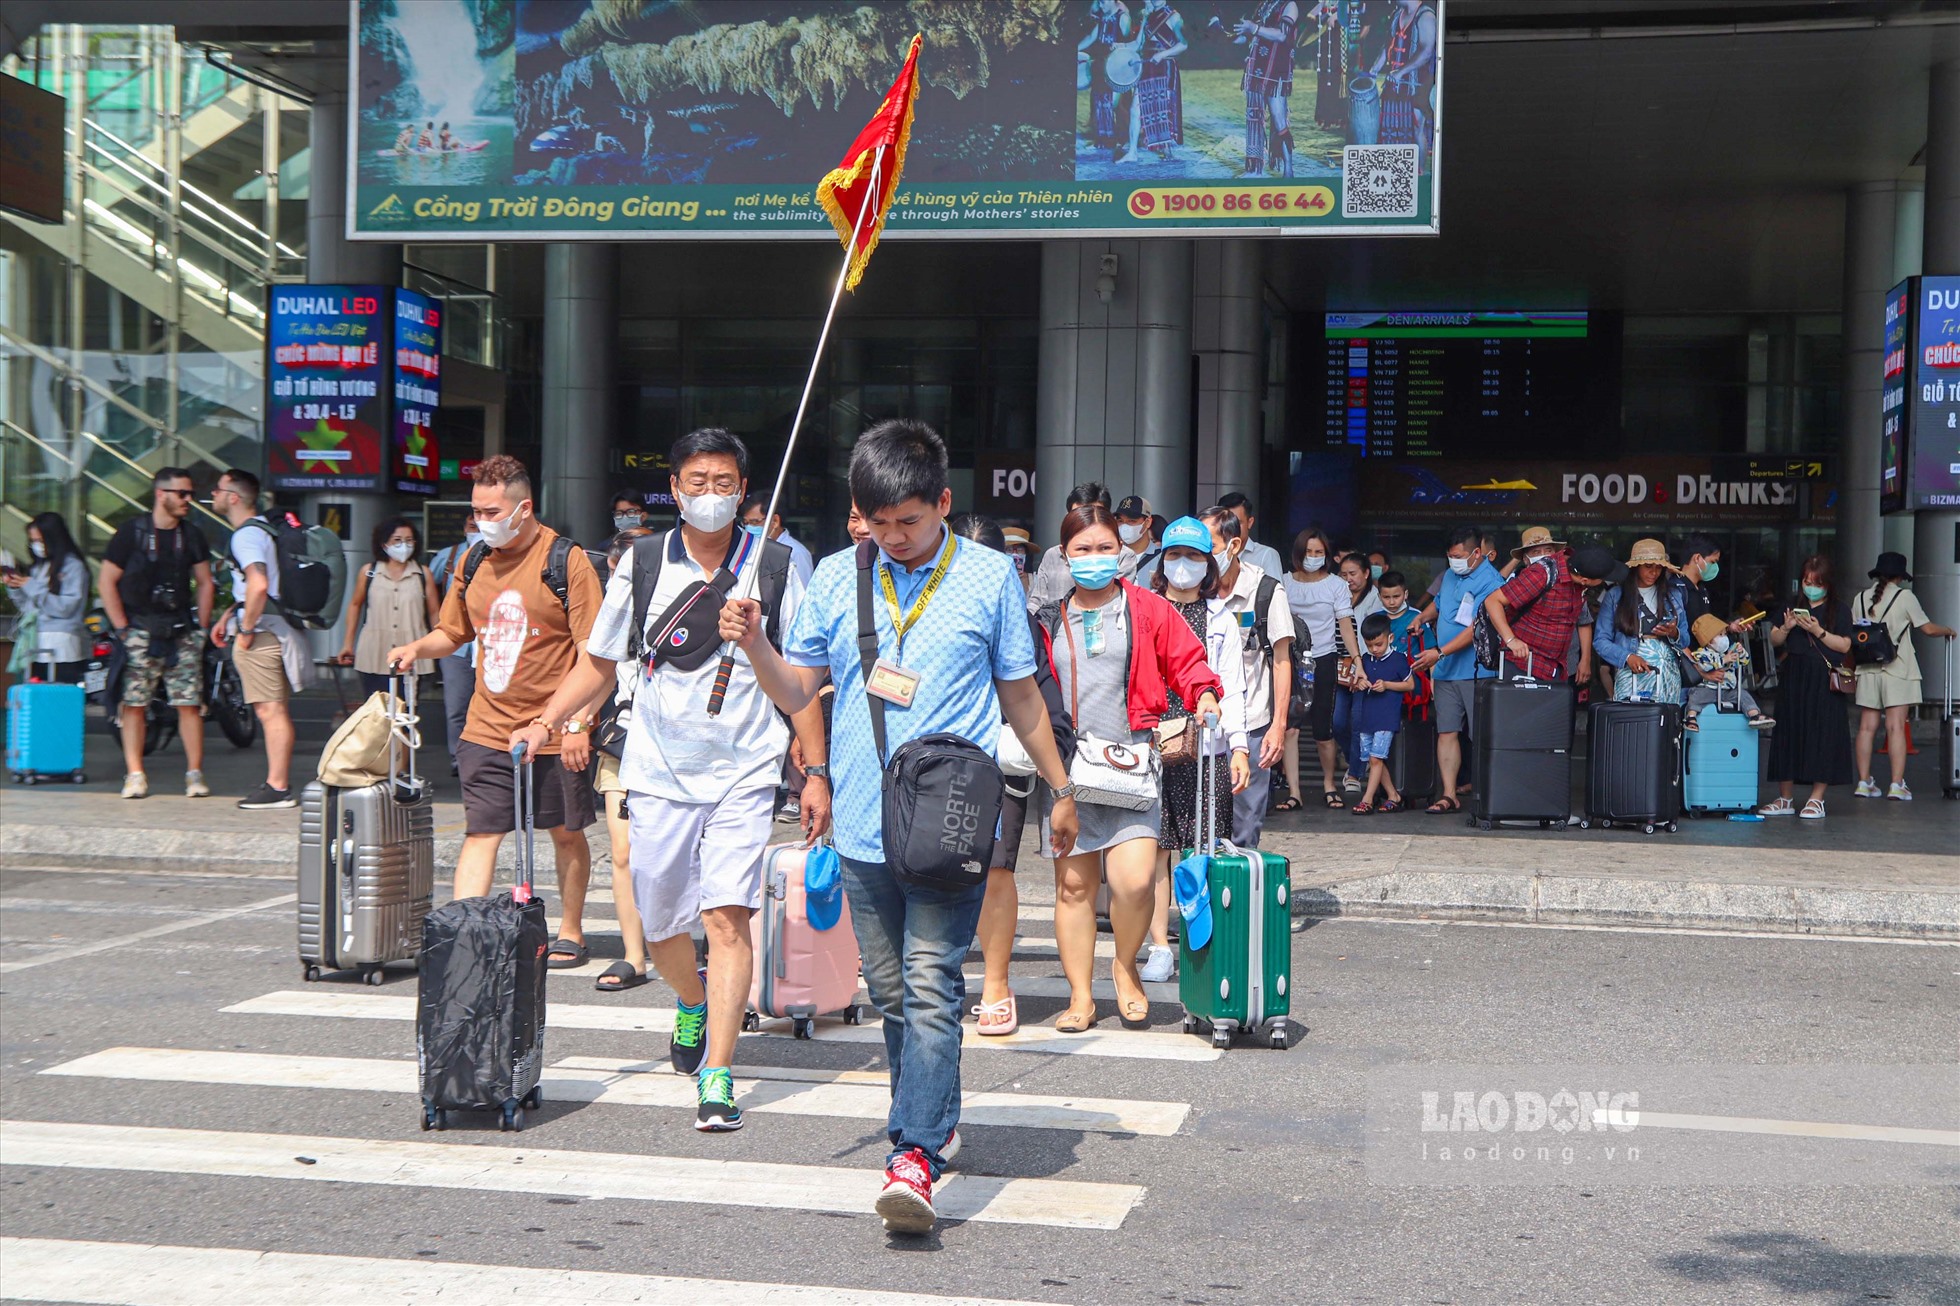 Không chỉ có các đoàn khách trong nước mà nhiều khách nước ngoài bày tỏ niềm vui khi đến du lịch tại Đà Nẵng.